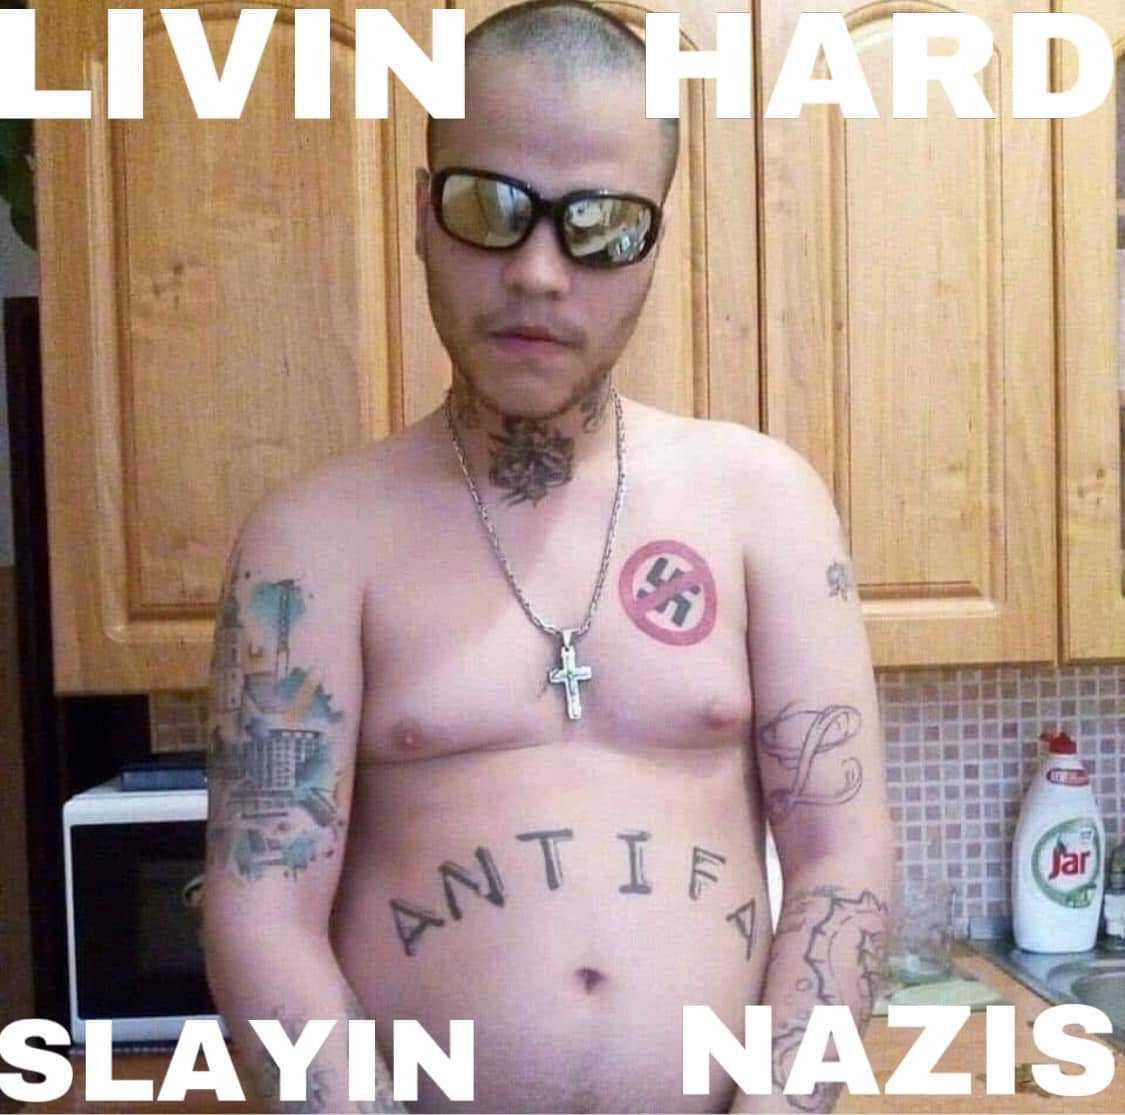 antifa tattoo guy - Livin Hard Jar Antia Slayin Nazis